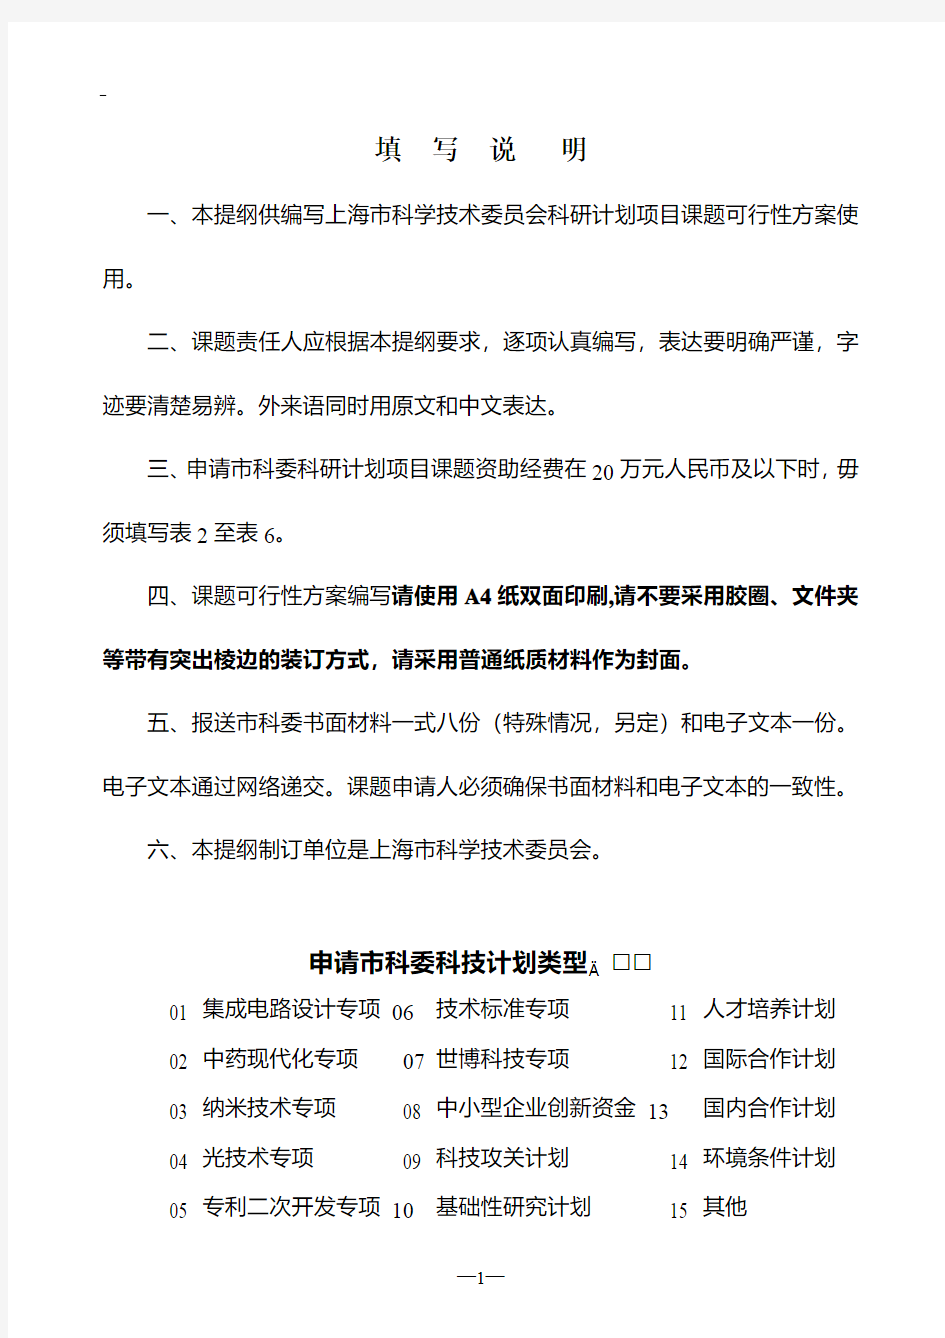 上海市科学技术委员会科研计划项目课题可行性方案